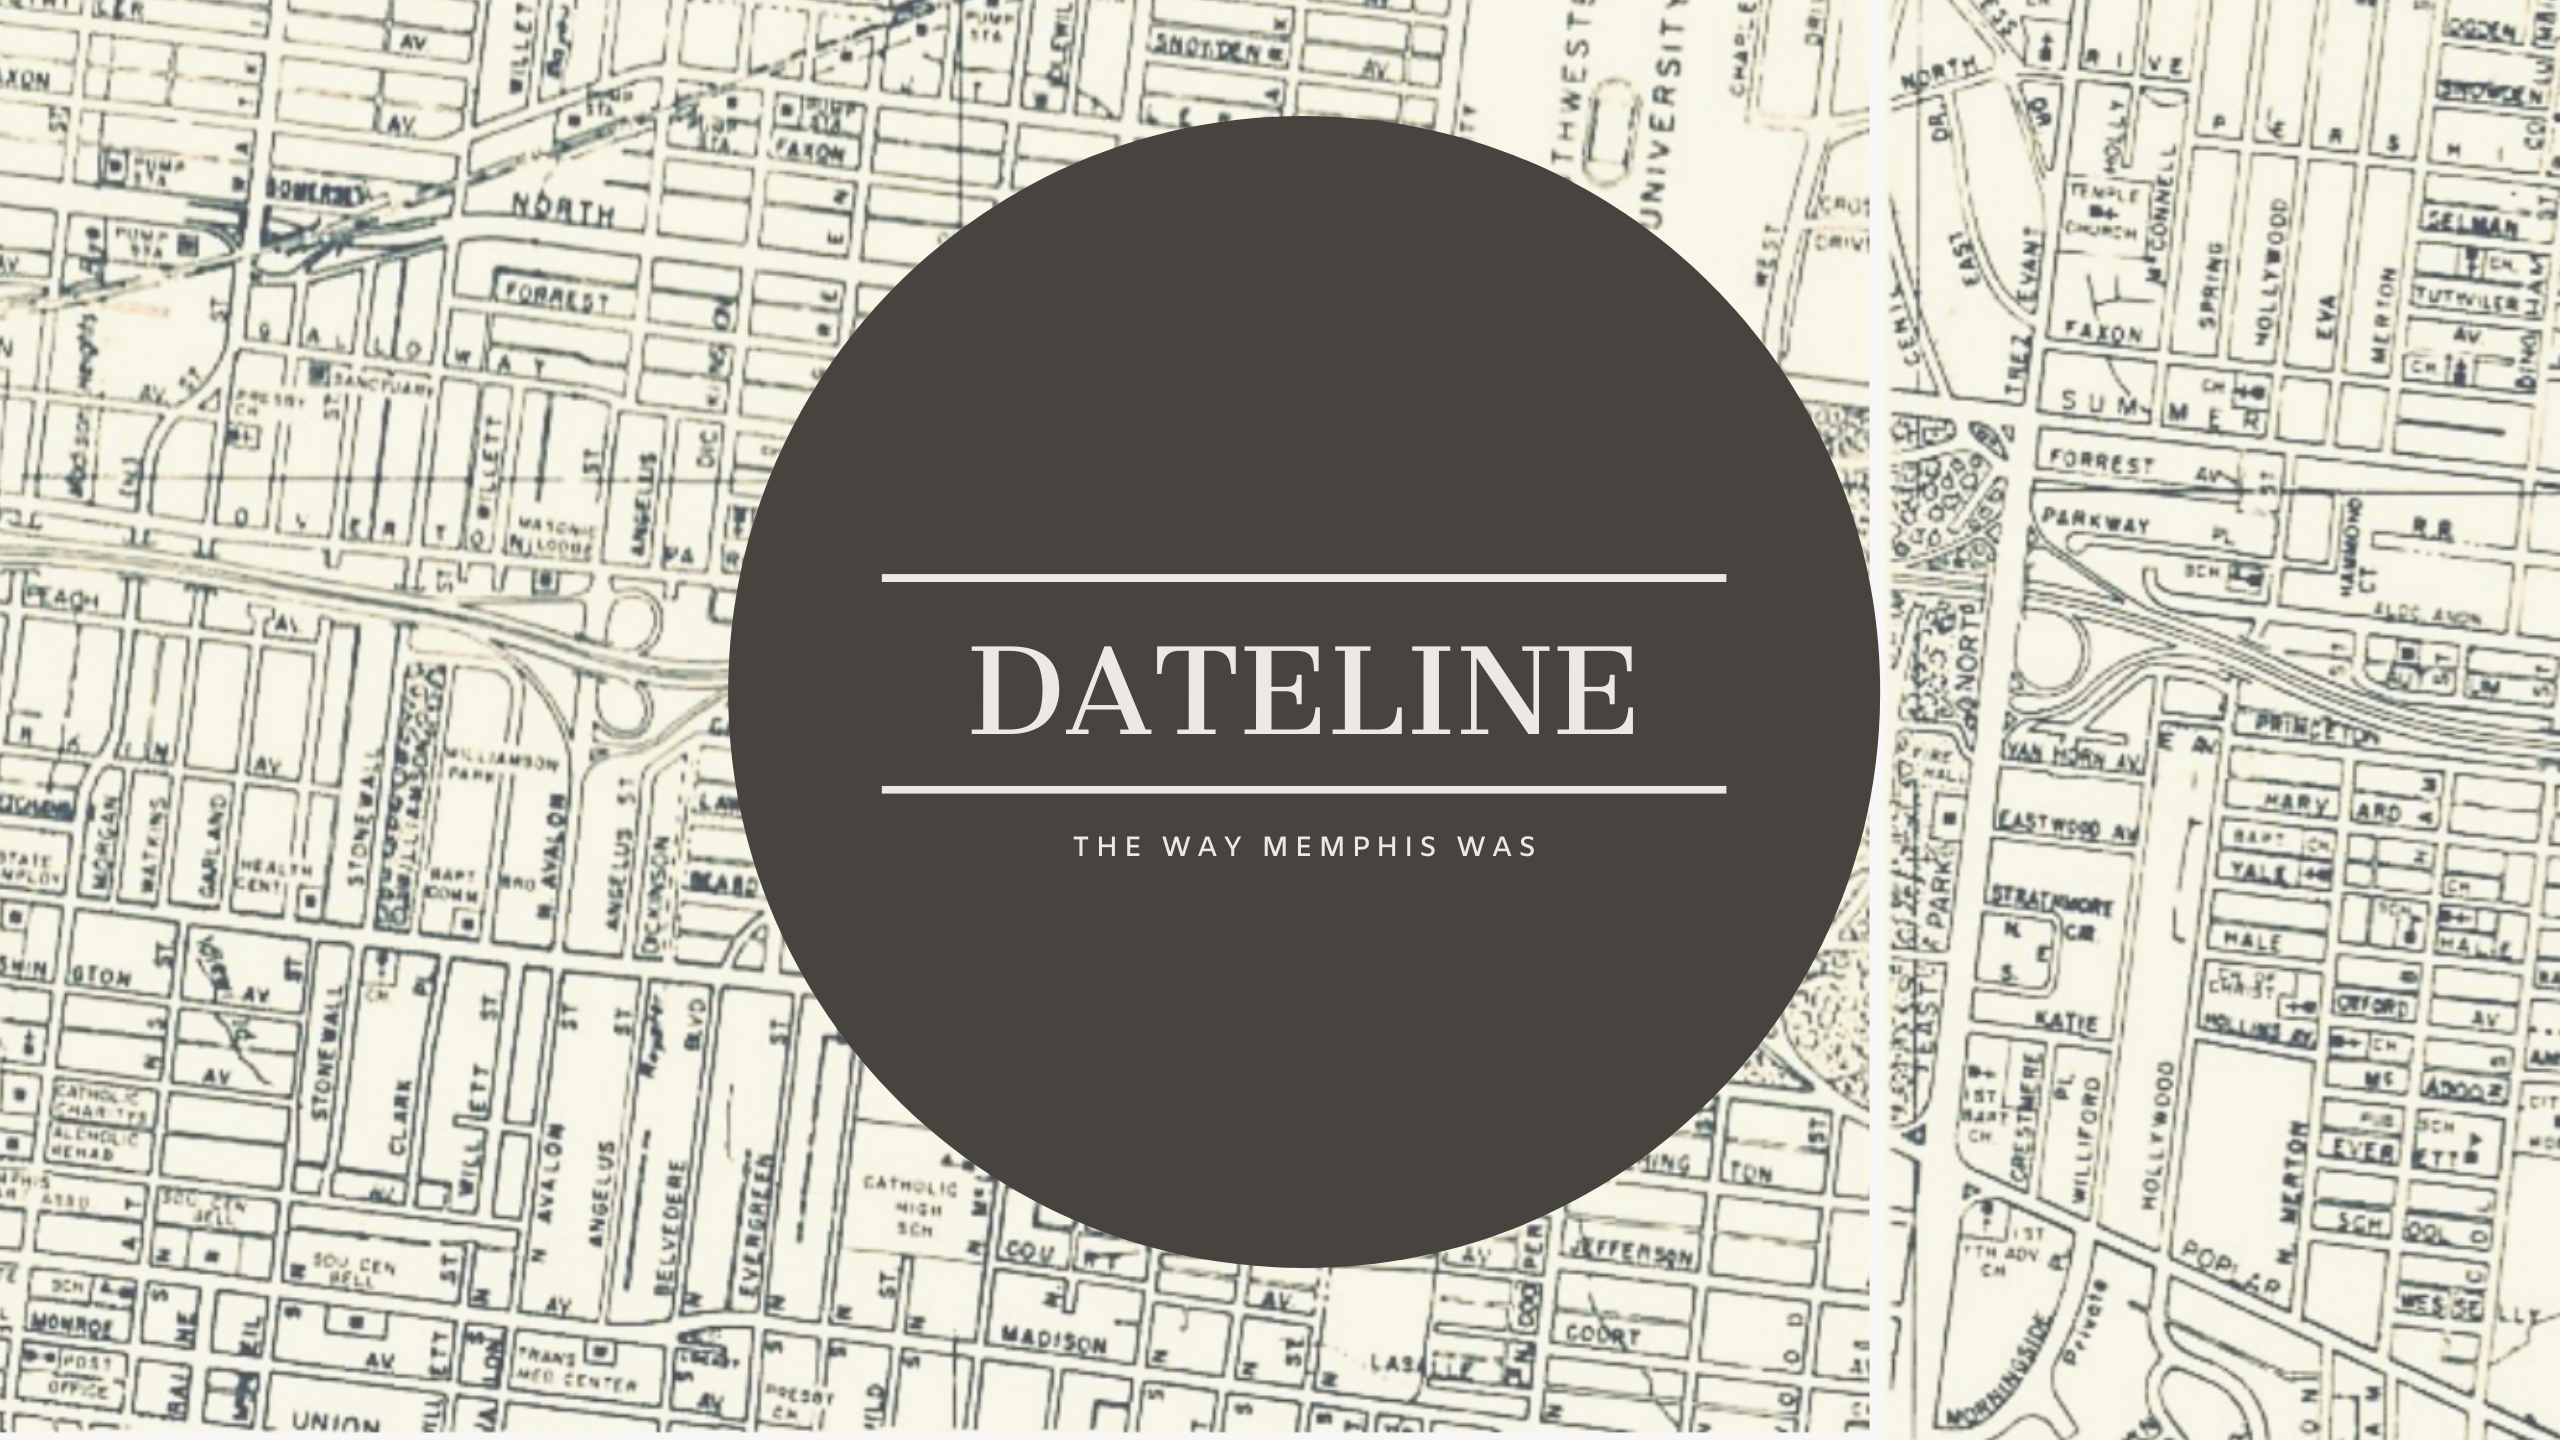 Dateline